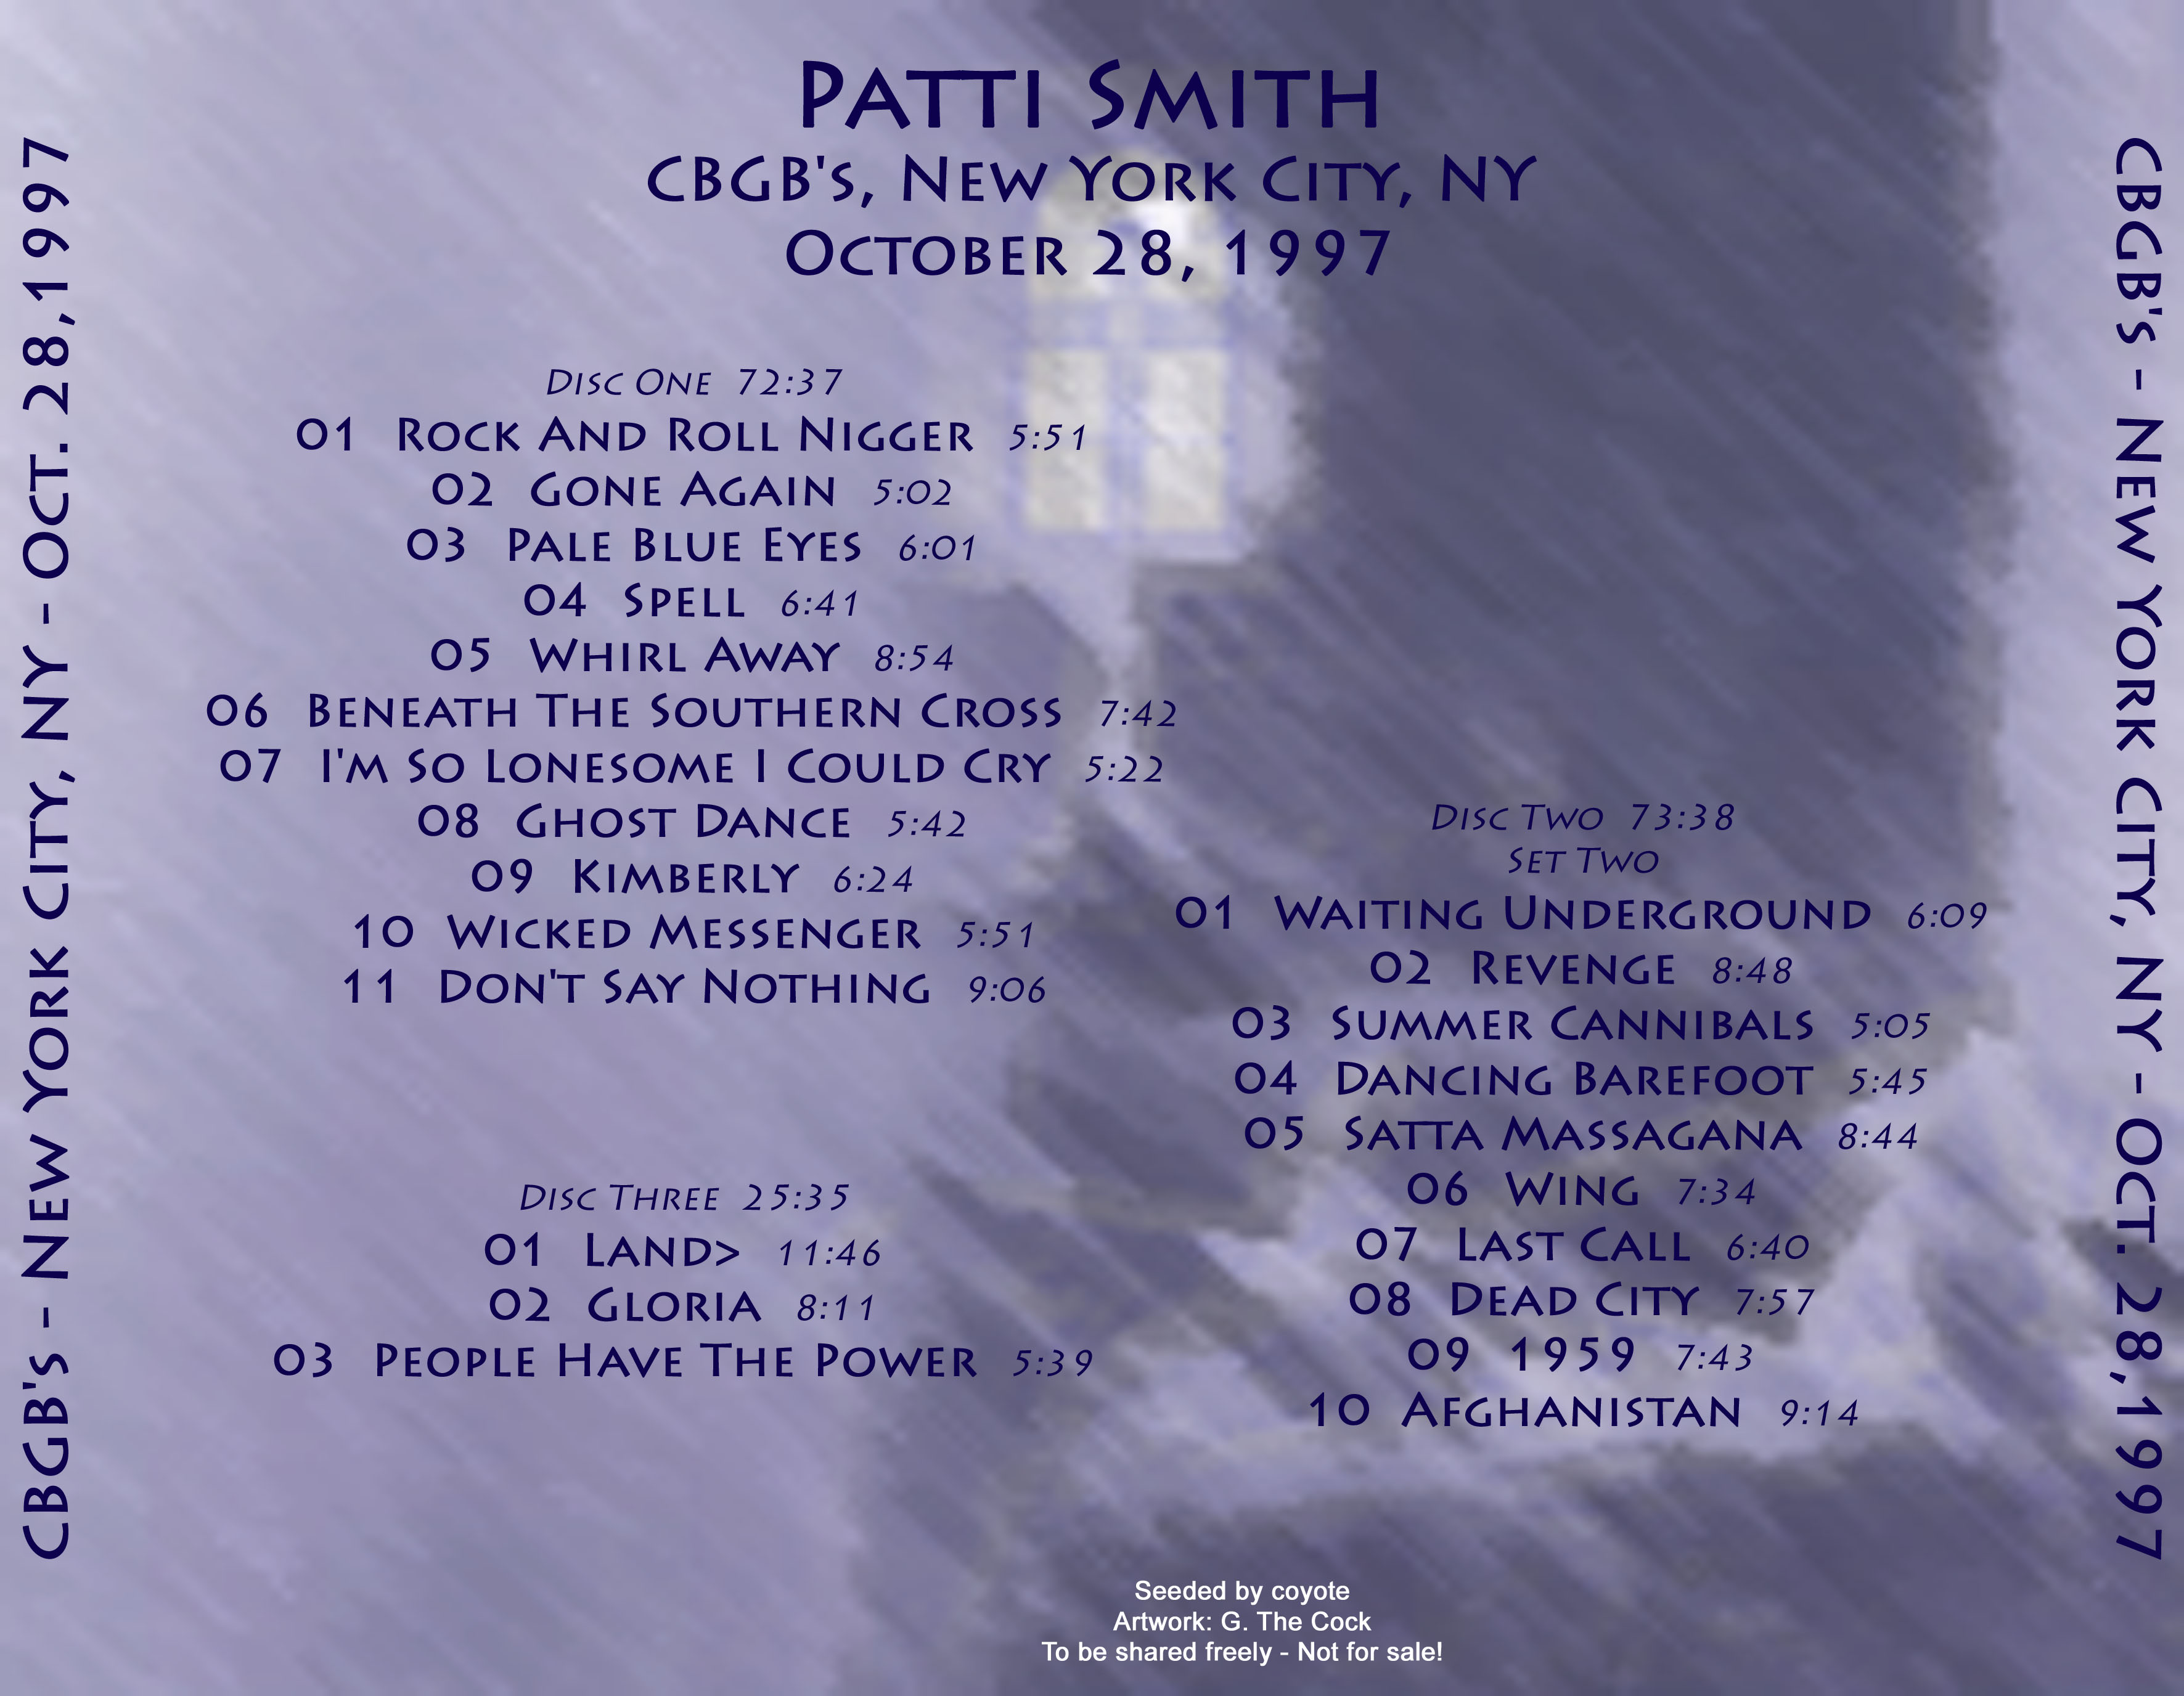 PattiSmith1997-10-28CBGBsNYC (1).jpg